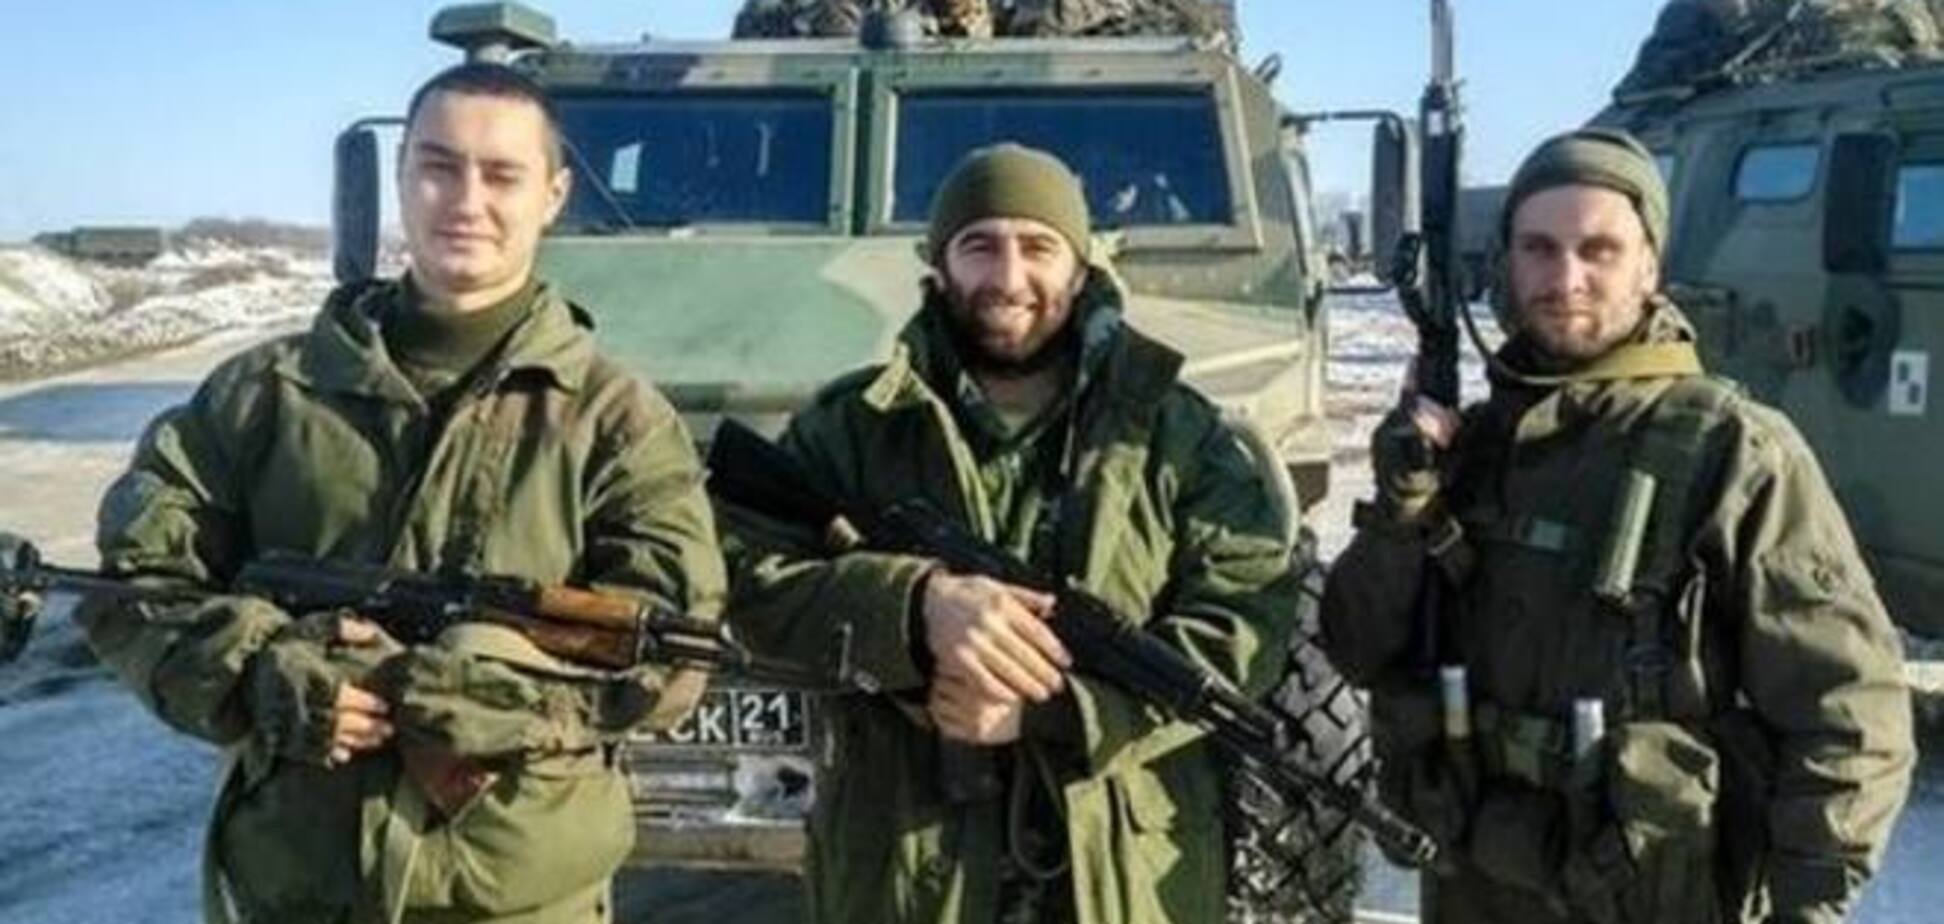 На Донбассе в рядах террористов воюют российские разведчики: фотофакт